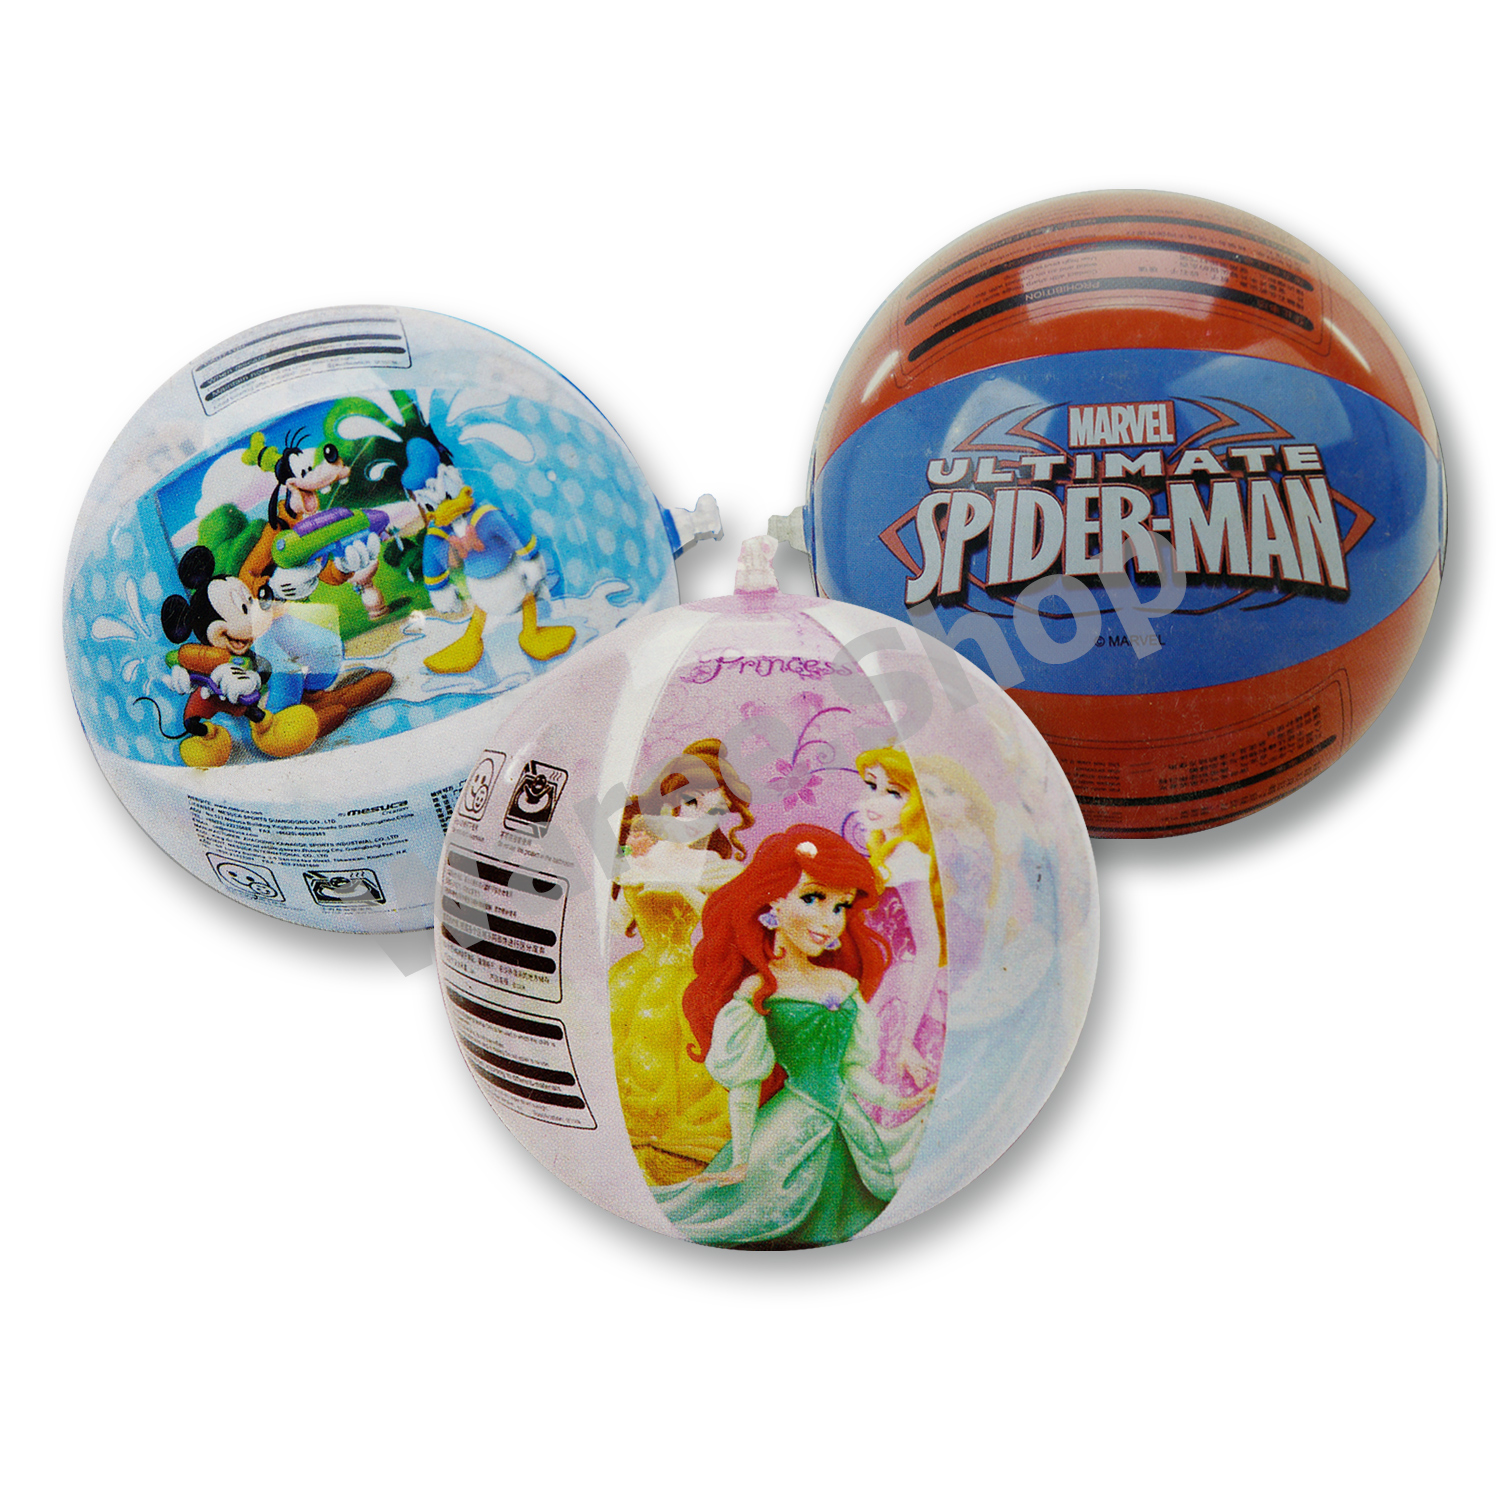 ลูกบอลเป่าลม ลิขสิทธิ์แท้ เจ้าหญิง Disney สไปเดอร์แมน มิกกี้เมาส์ ลูกบอล บอล บอลเป่าลม ลายการ์ตูน ขนาด 35 cm.